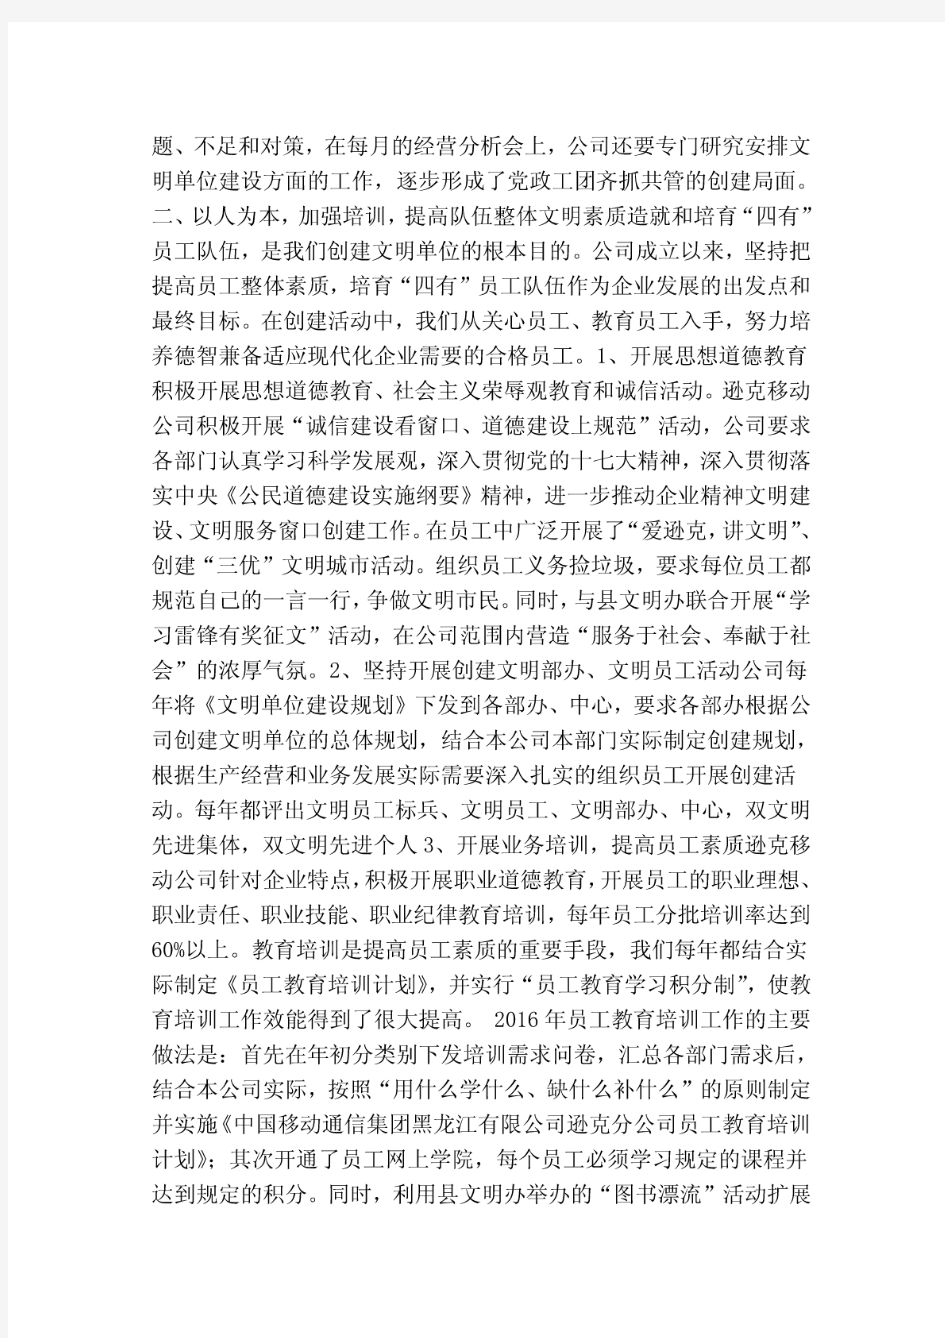 中国移动通信集团分公司重新申报省级文明单位汇报材料(精简版)